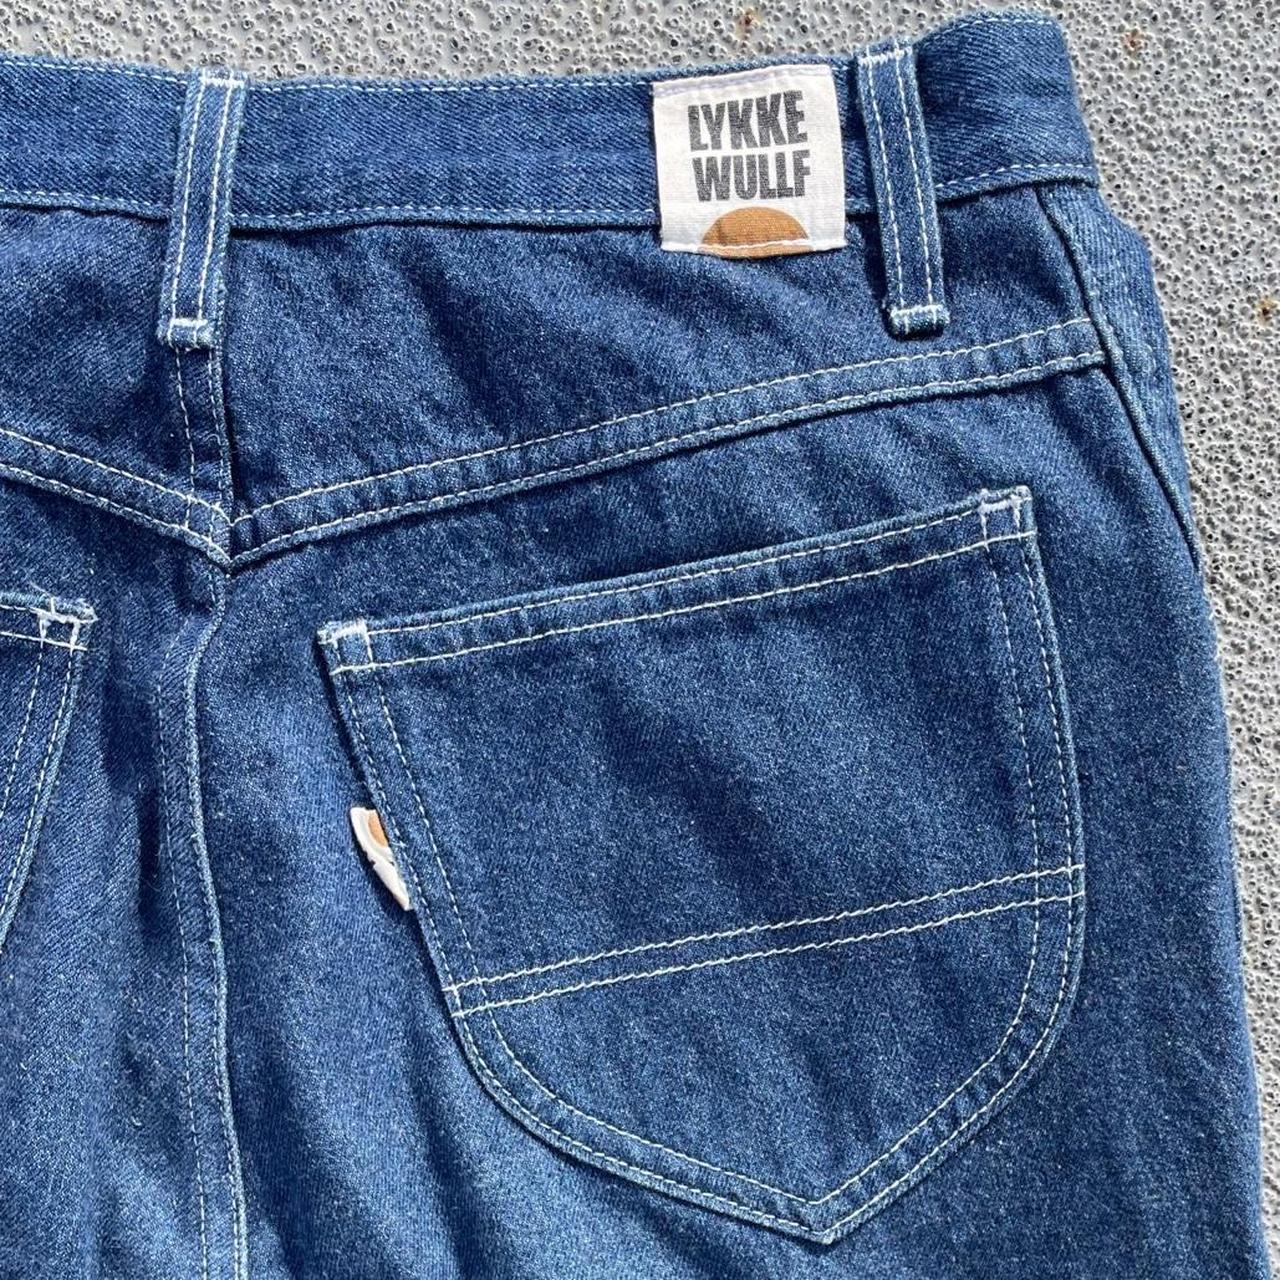 Lykke Wullf Women's Blue Jeans (4)